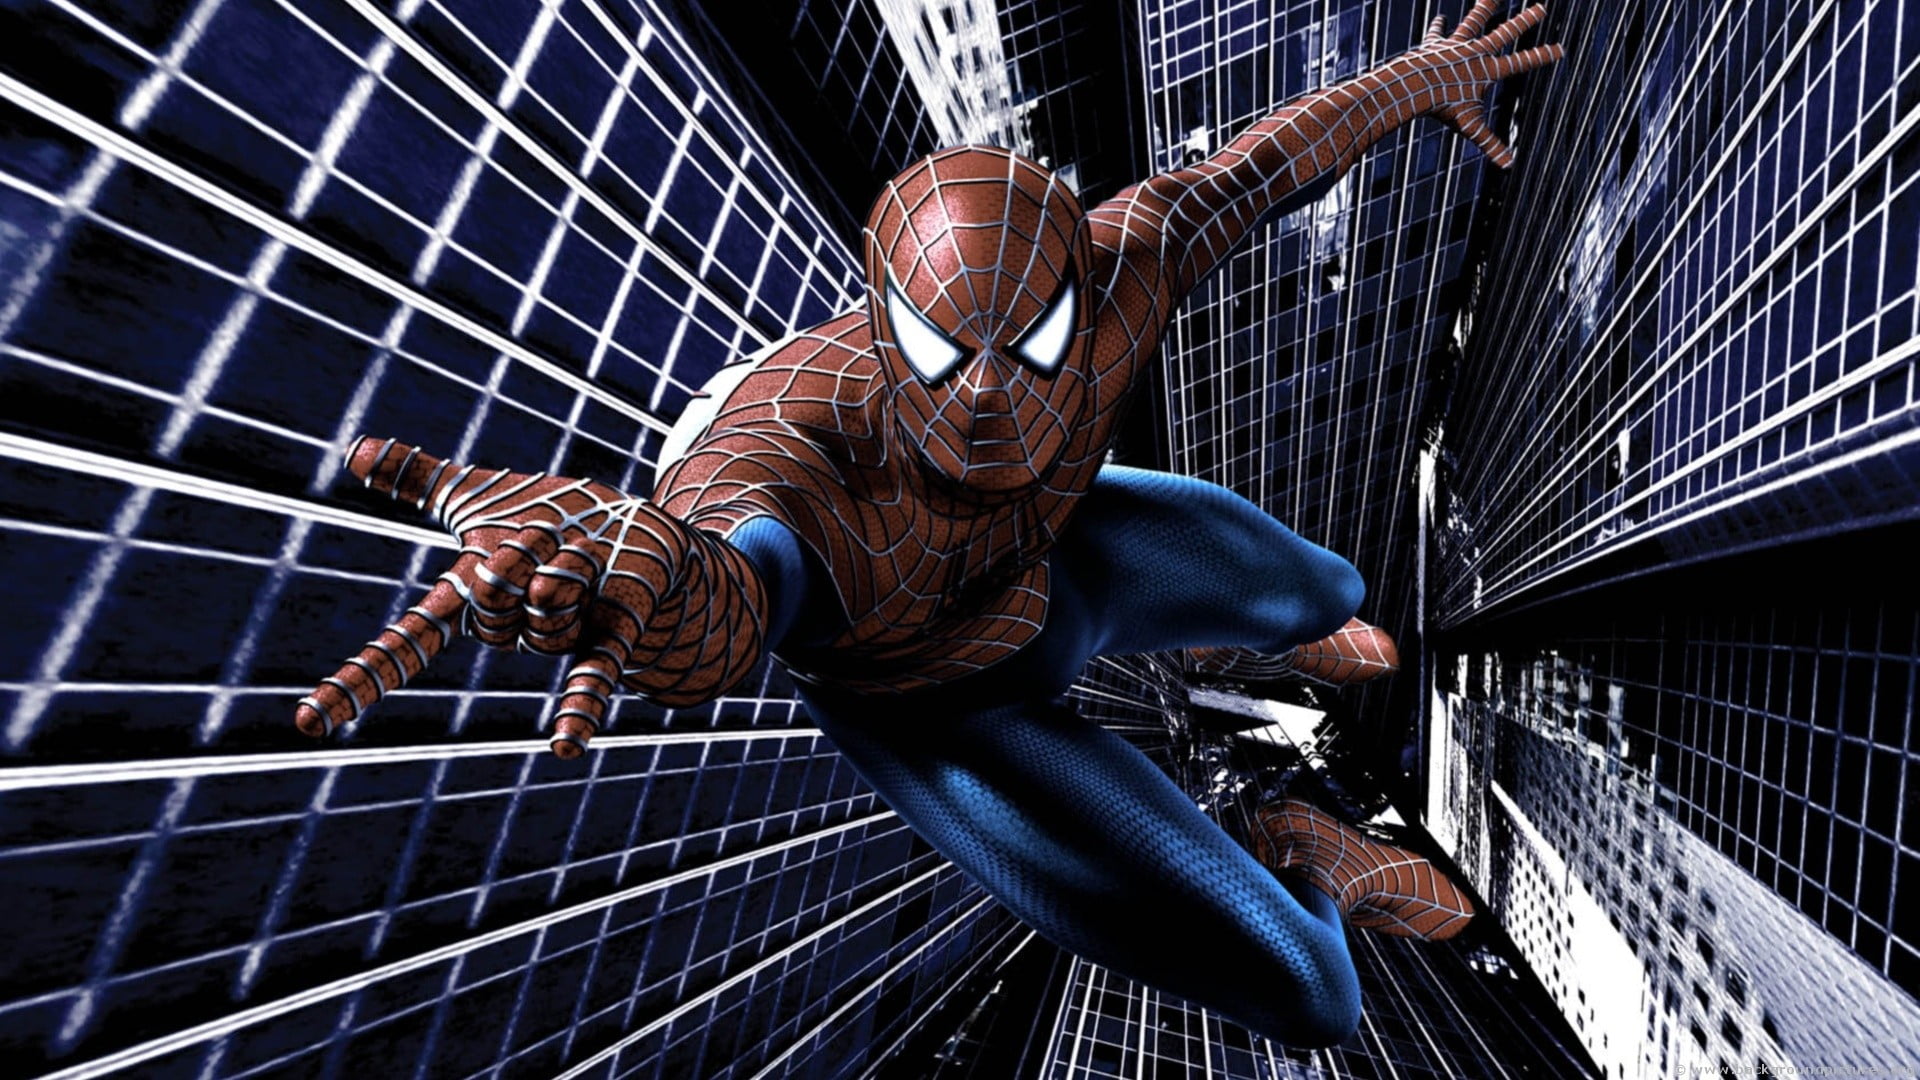 Spider-Man digital wallpaper, Spider-Man, movies, The Amazing Spider-Man